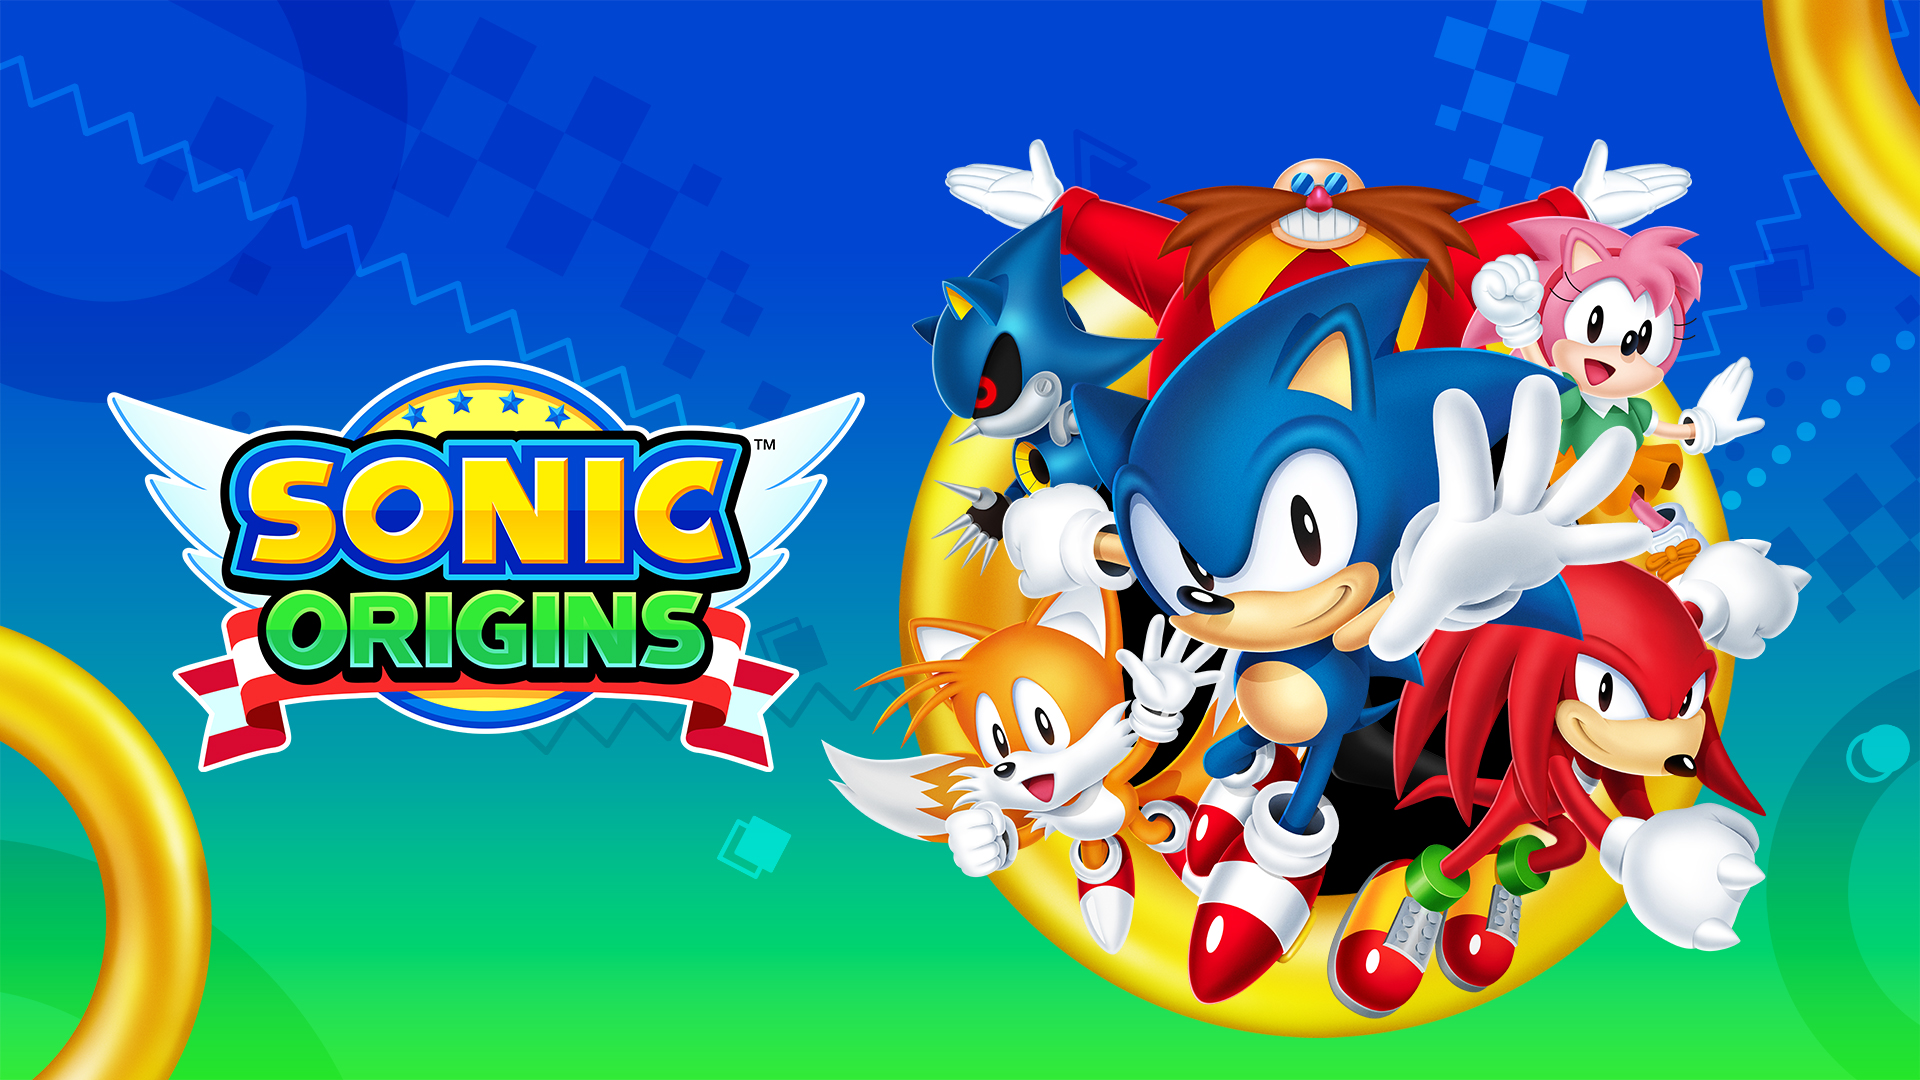 Sonic Origins porta 4 giochi di Sonic the Hedgehog su console e PC a giugno